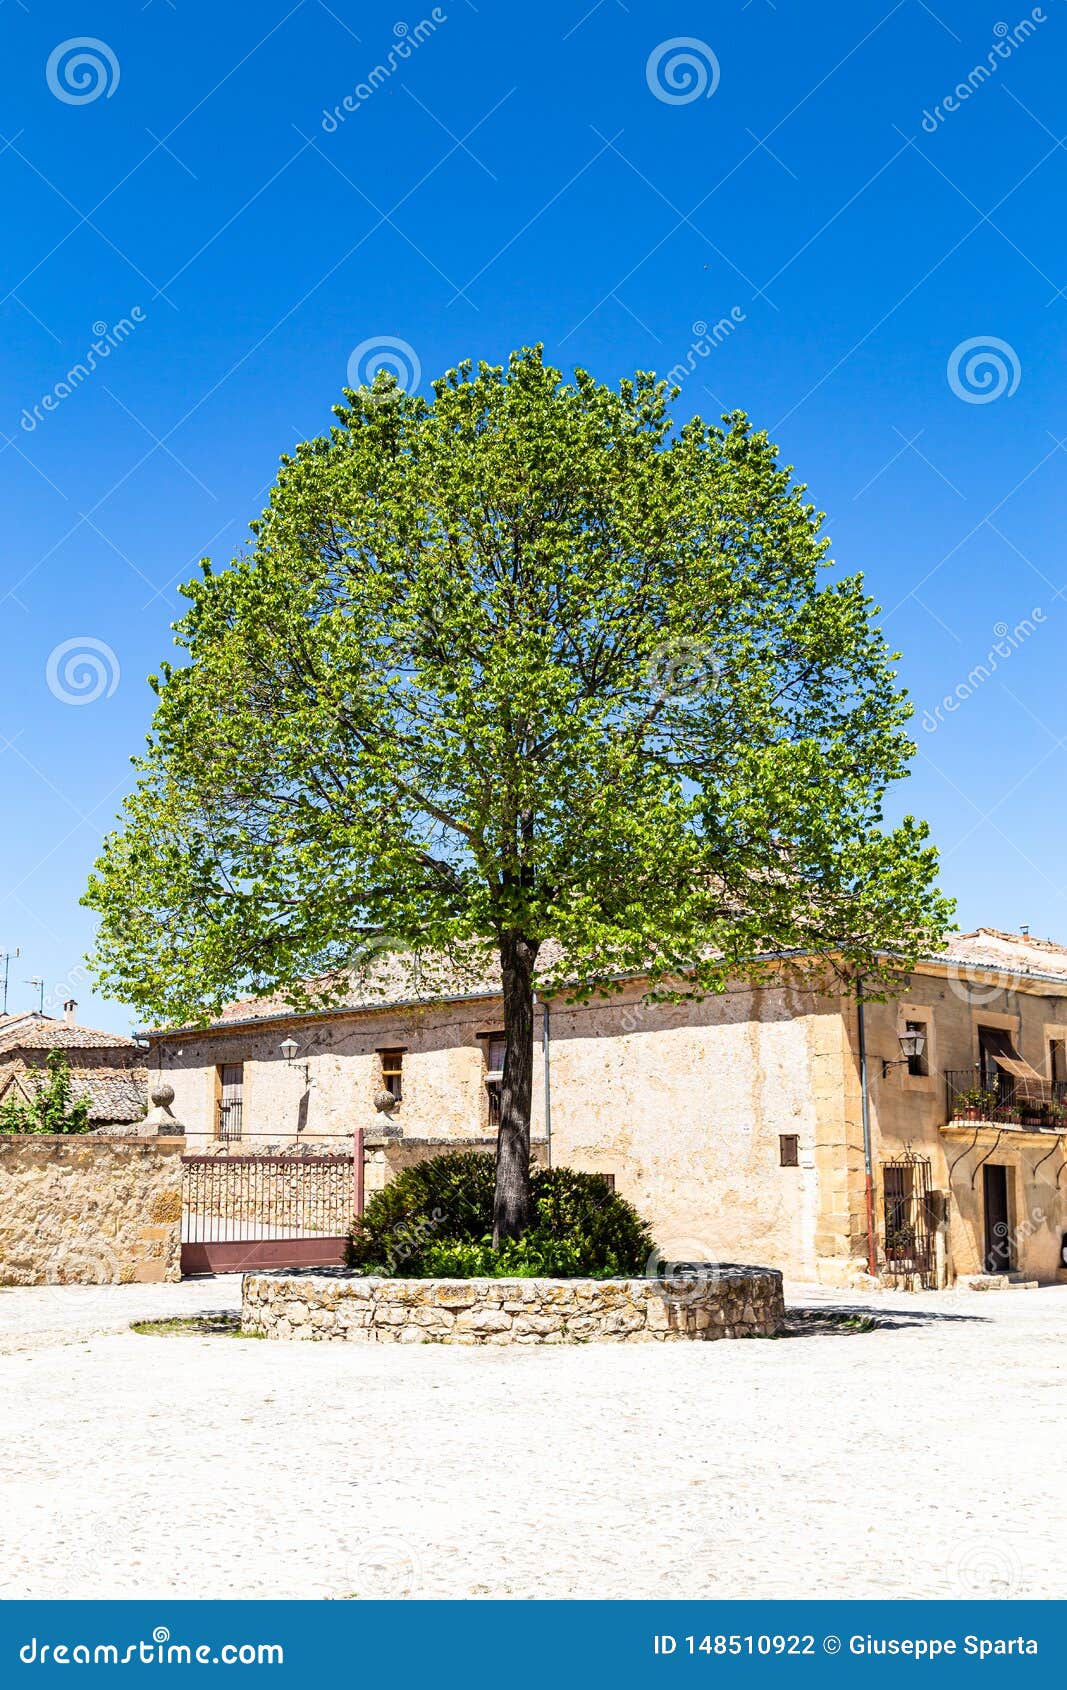 pedraza, castilla y leon, spain: a lonely tree in plaza del ganado.